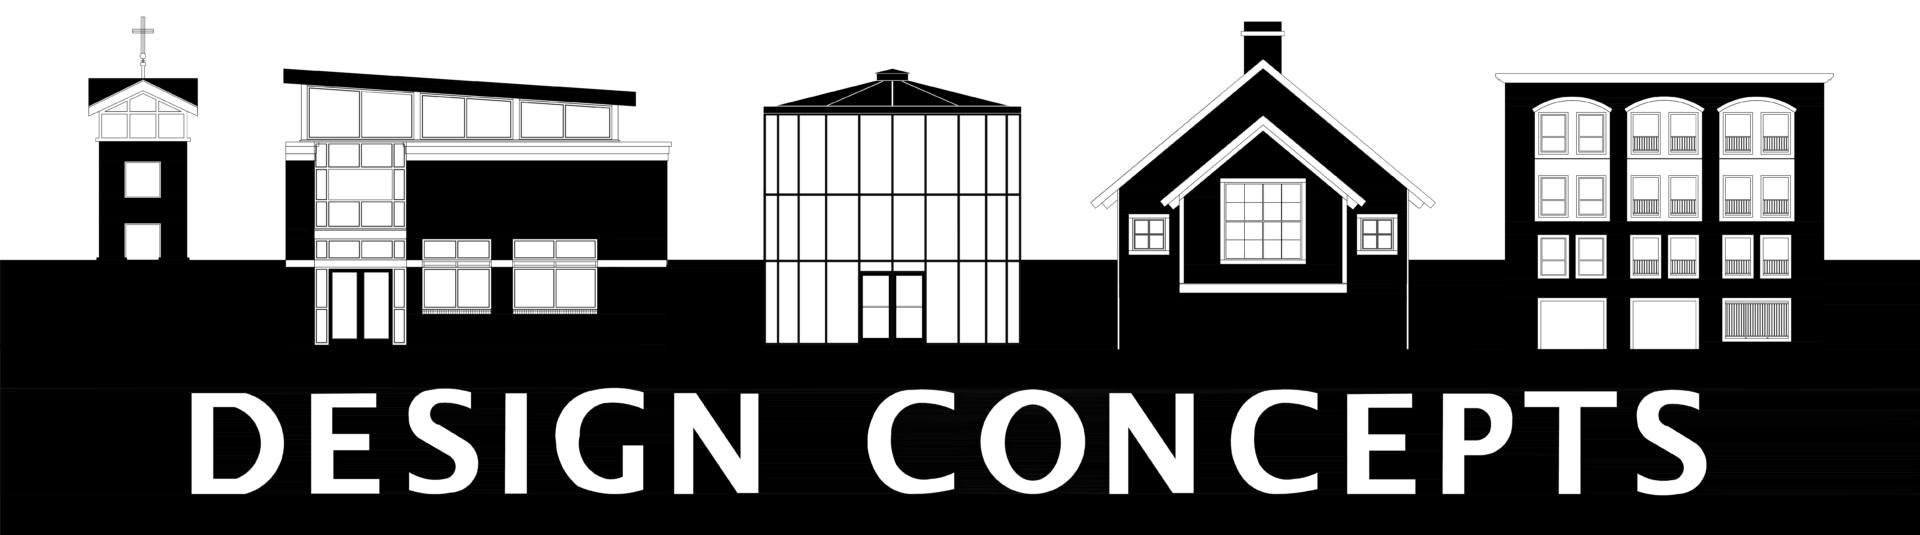 design concepts logo